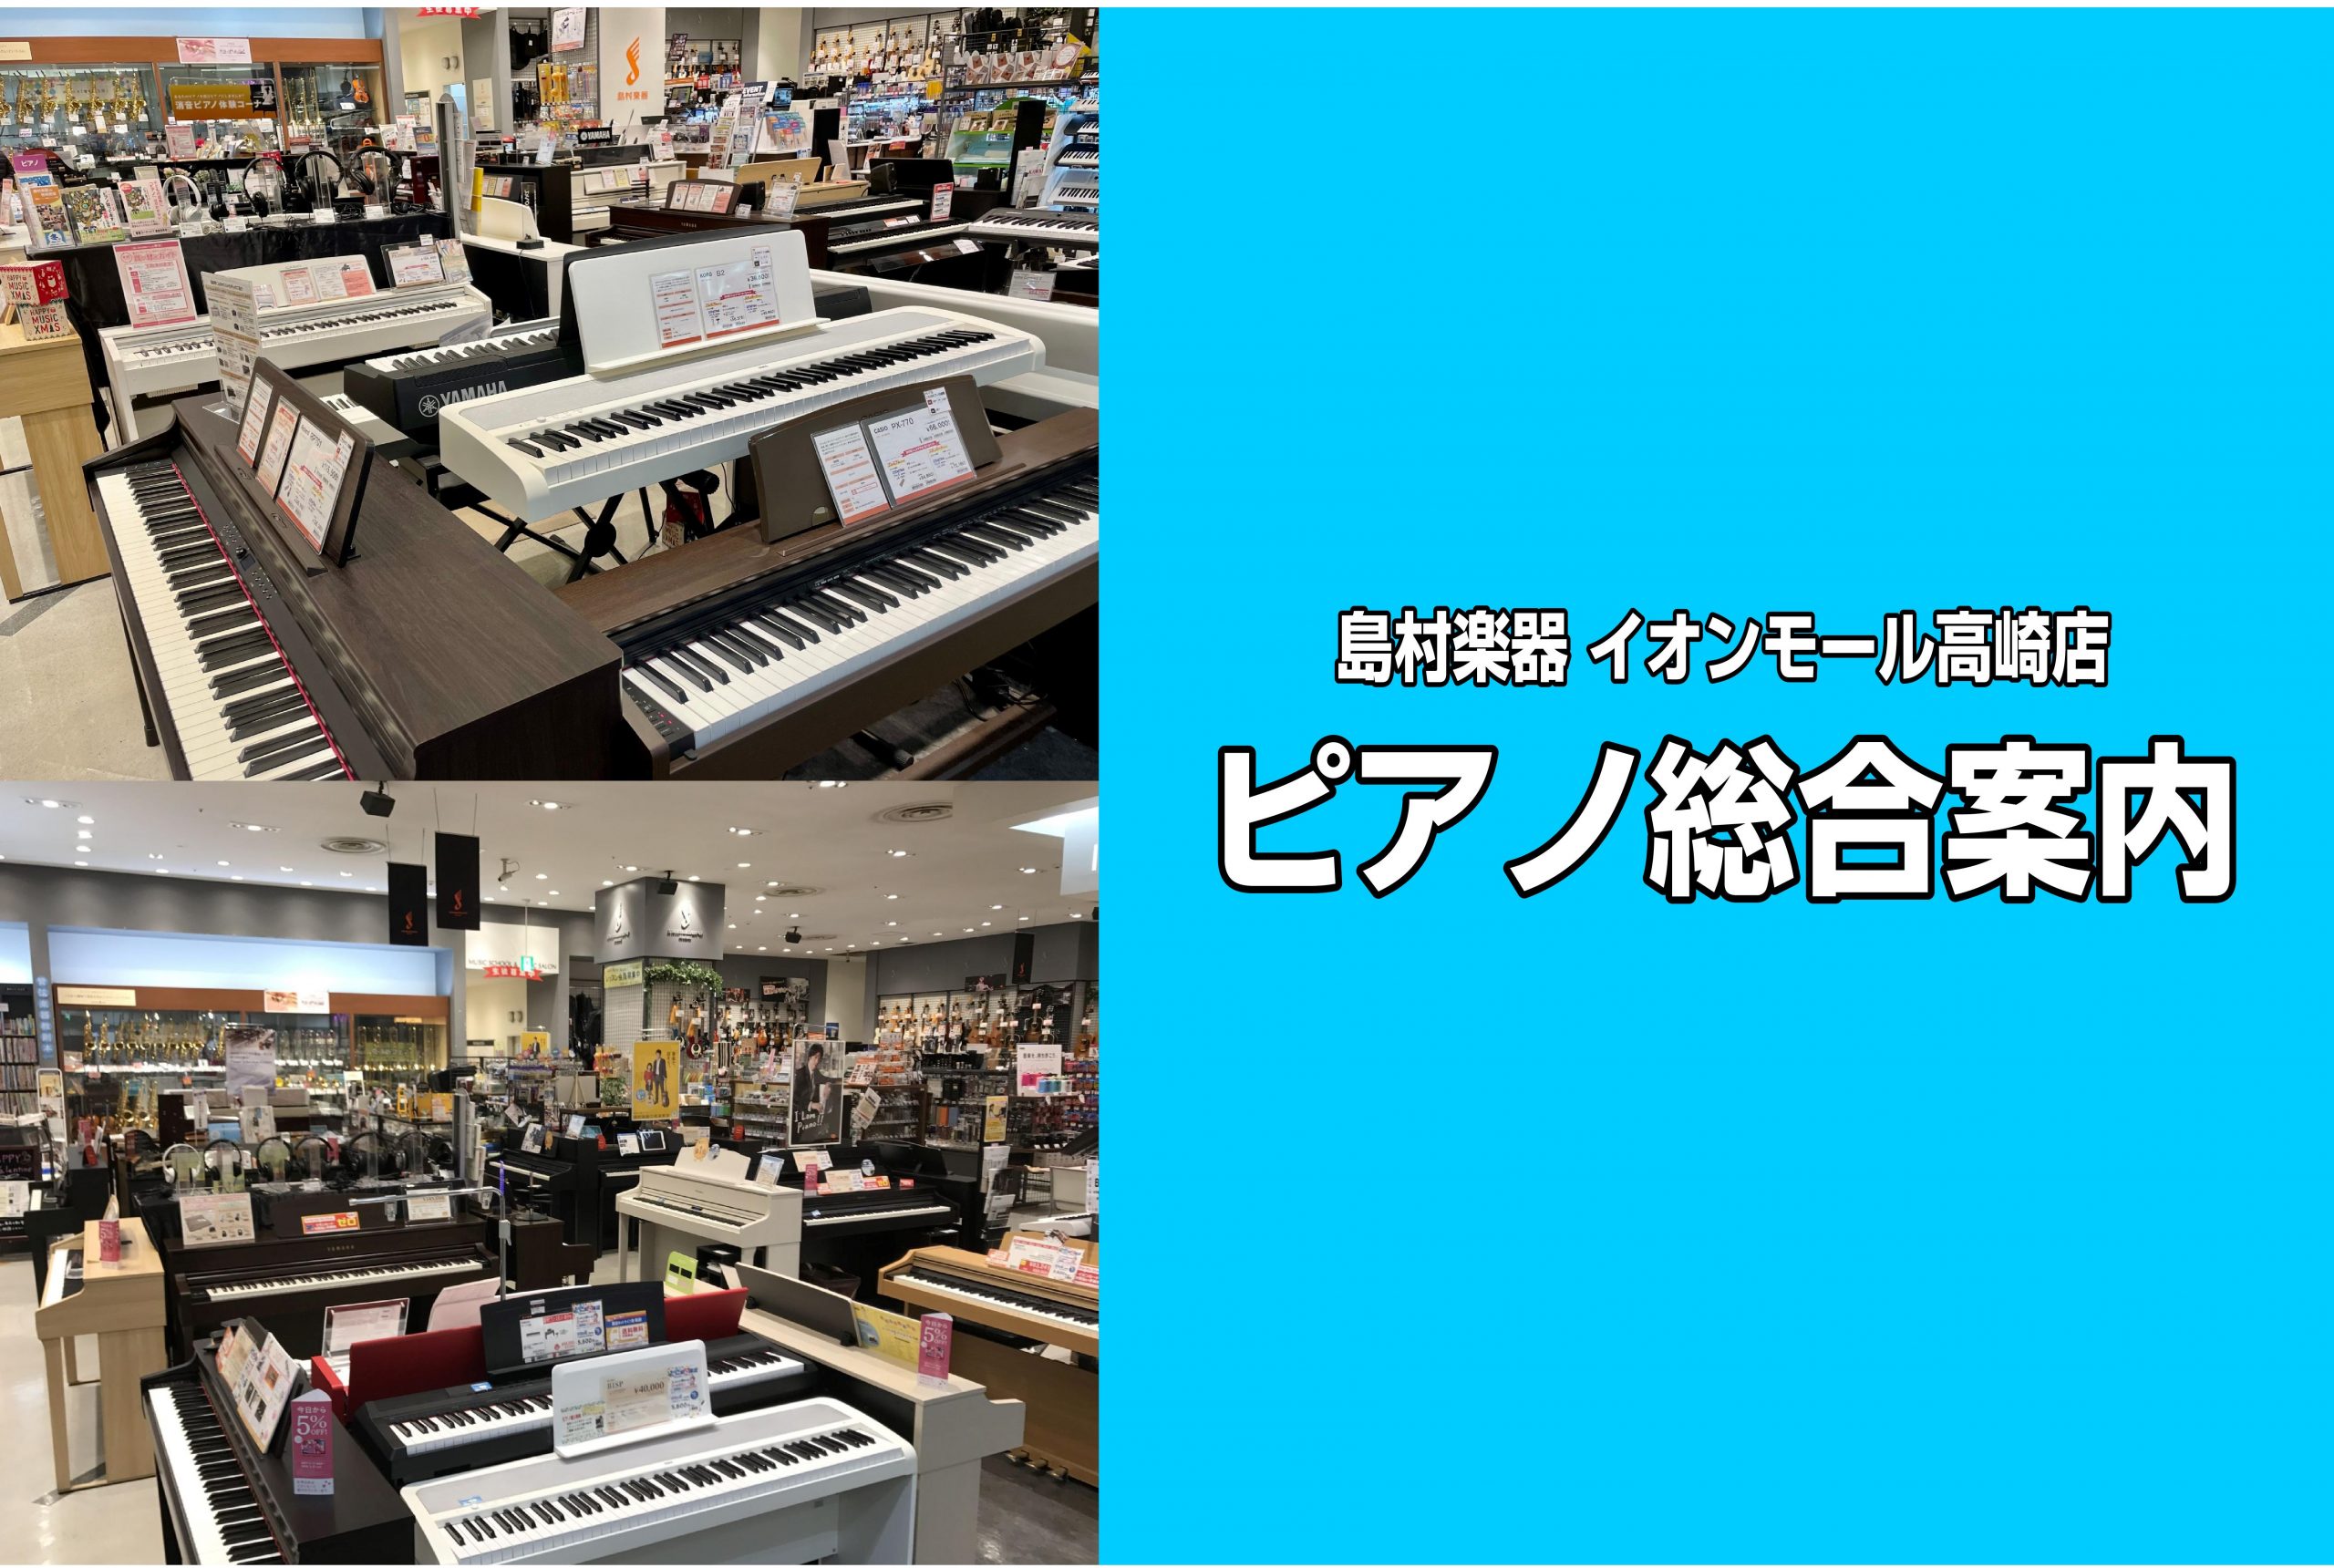 *ピアノのことなら何でもご相談ください。ピアノを楽しむための選び方、使い方、おすすめ商品お教えします！ **鍵盤楽器総合はこちら ***電子ピアノの楽しみ方、使い方、選び方は島村楽器イオンモール高崎店にお任せください！ [https://www.shimamura.co.jp/shop/takasa […]